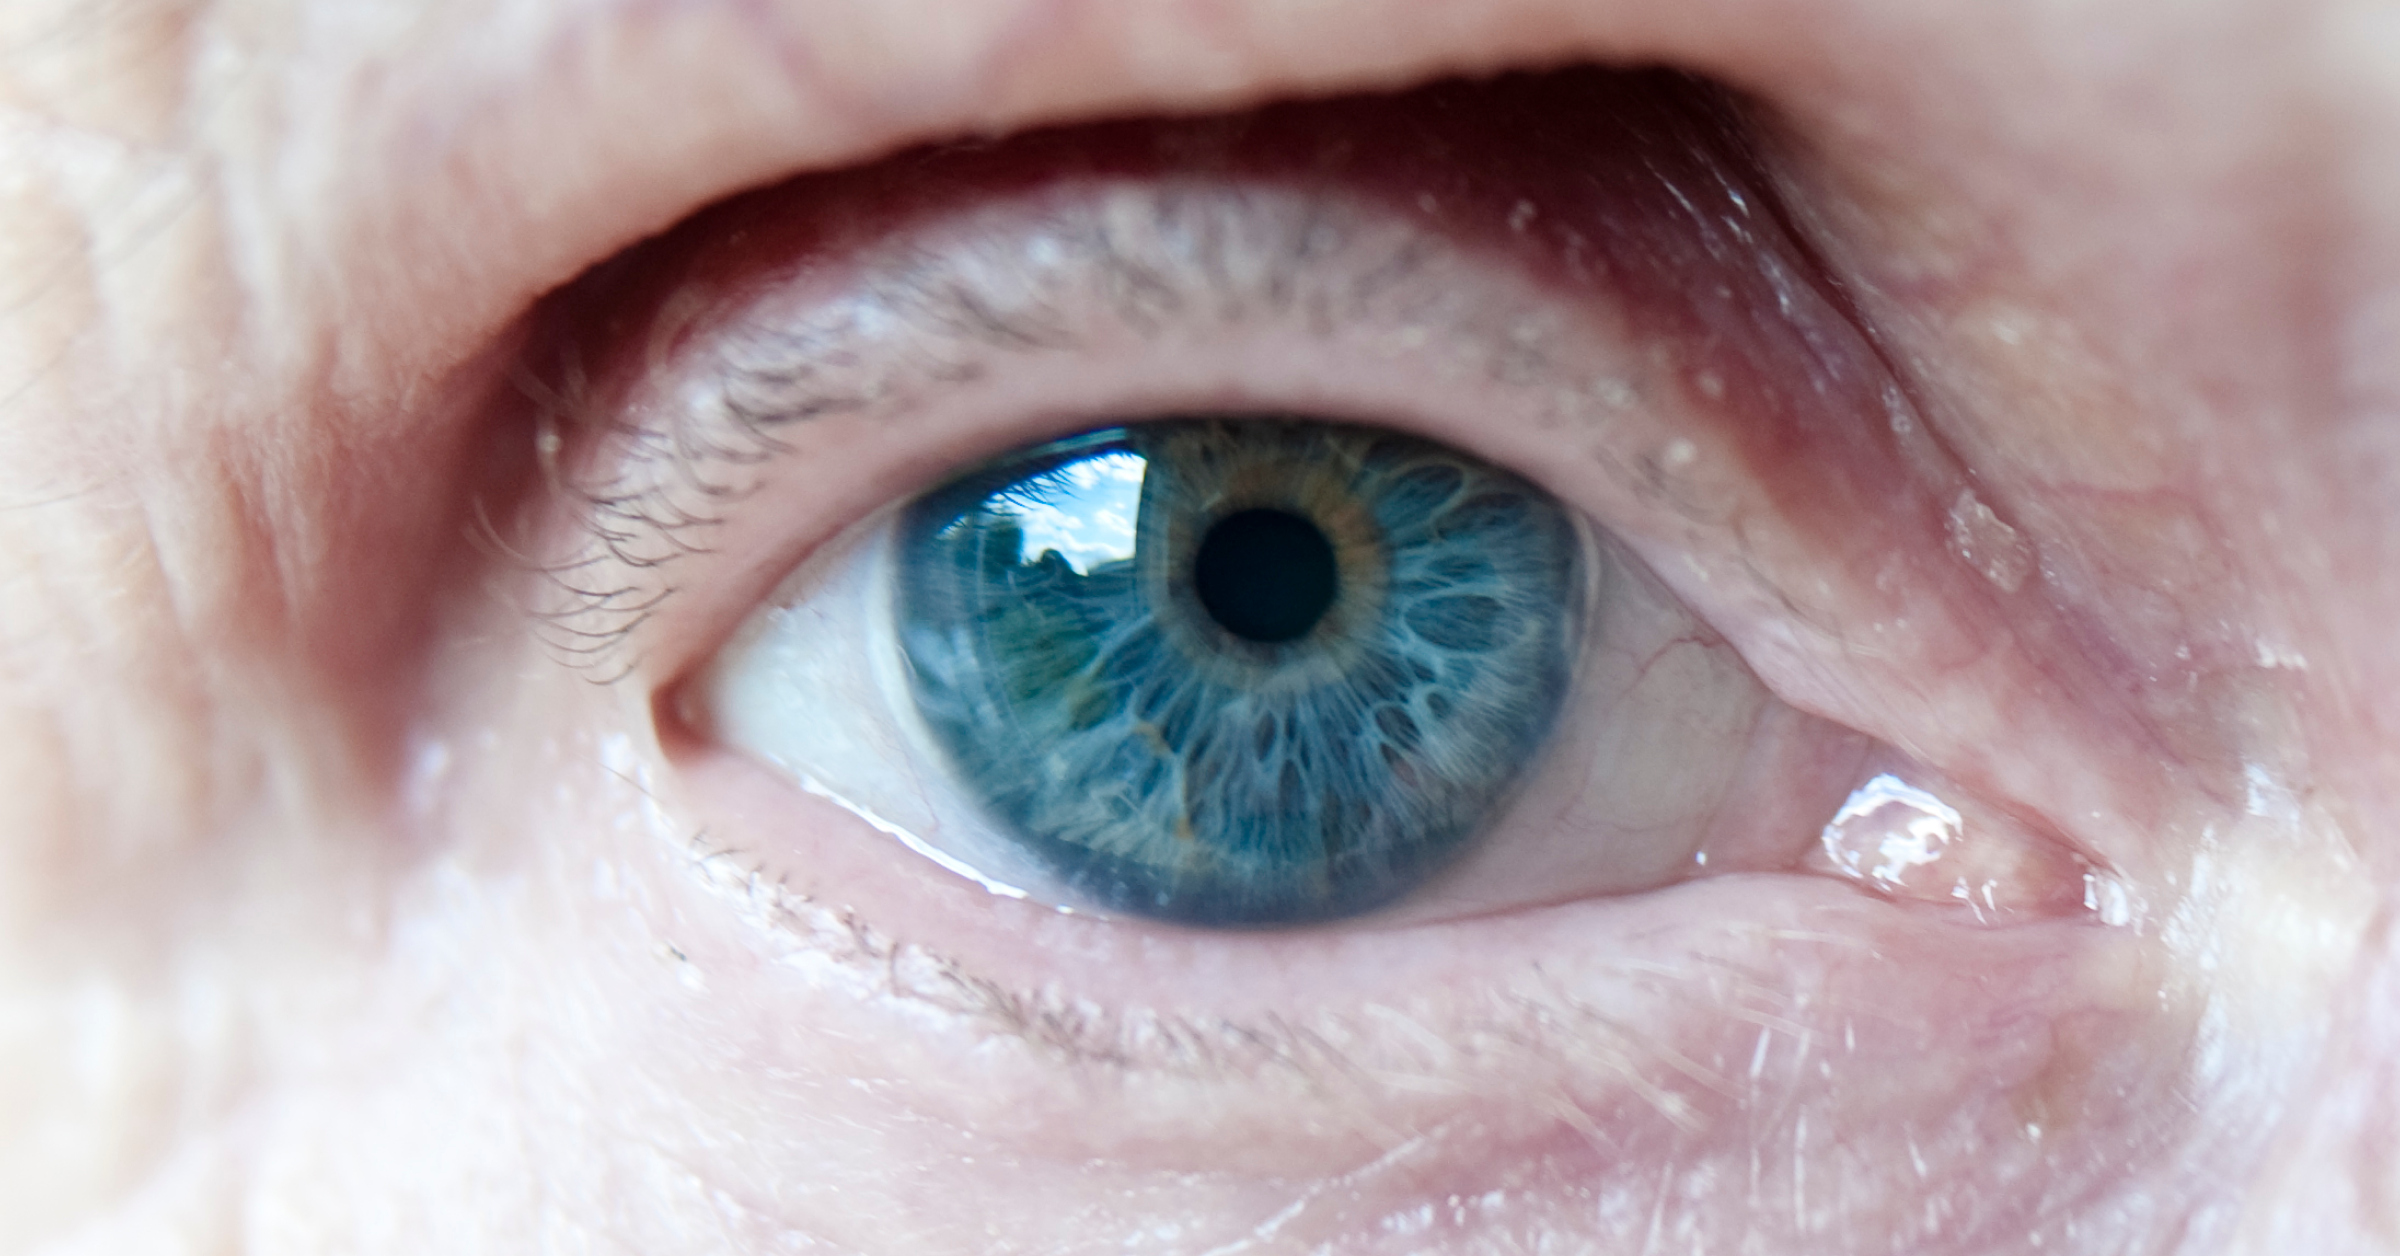 AMD. Blaues Auge eines alten Menschen